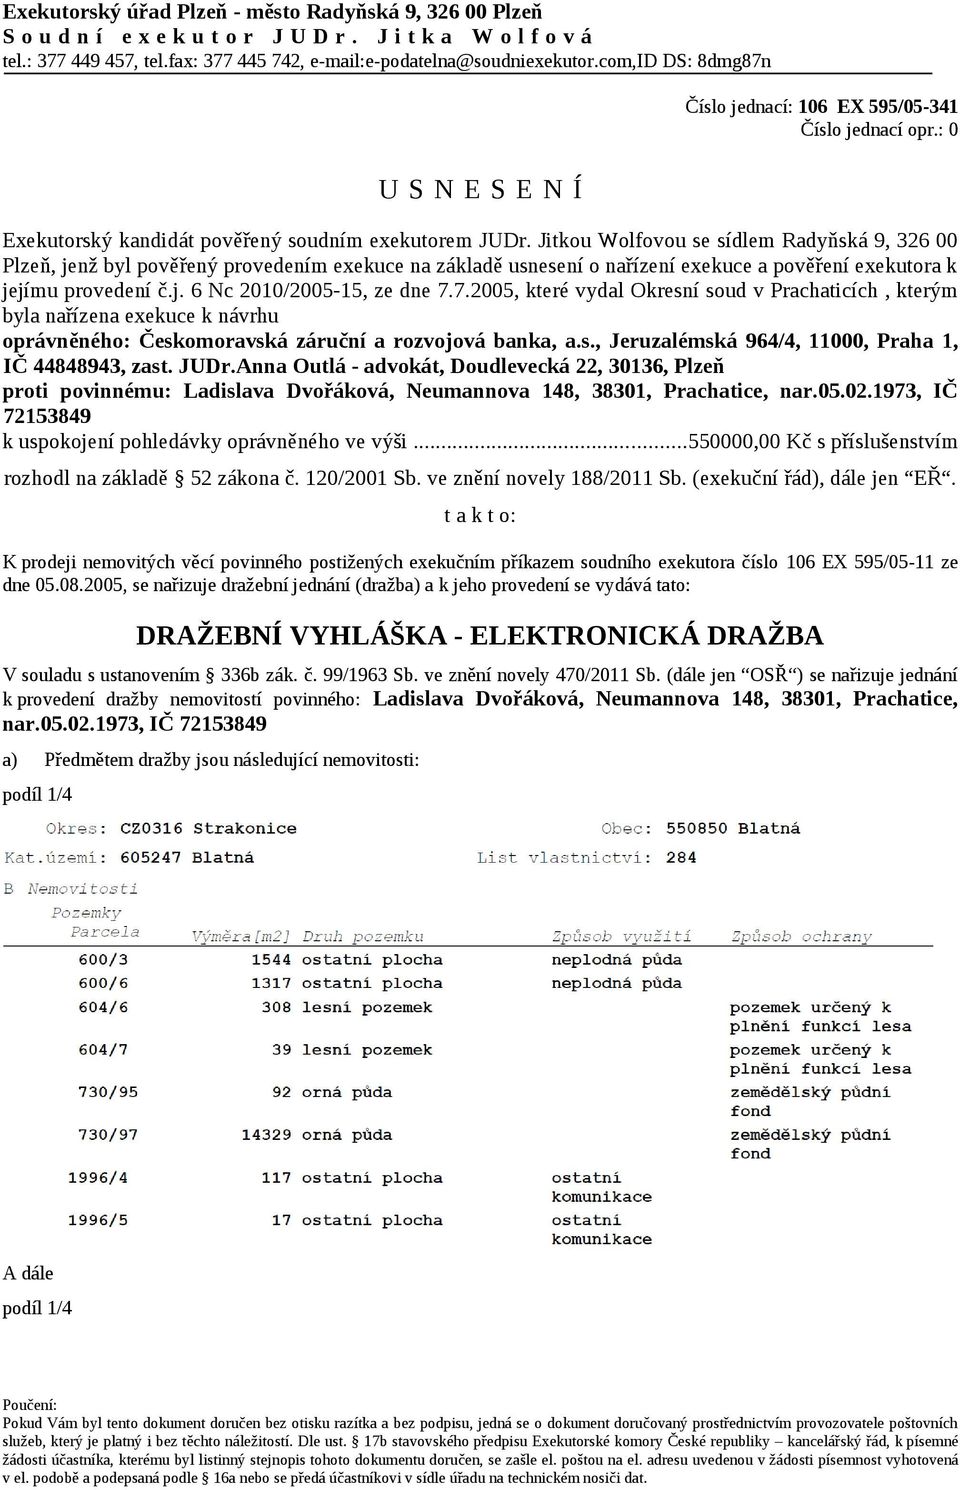 Jitkou Wolfovou se sídlem Radyňská 9, 326 00 Plzeň, jenž byl pověřený provedením exekuce na základě usnesení o nařízení exekuce a pověření exekutora k jejímu provedení č.j. 6 Nc 2010/2005-15, ze dne 7.